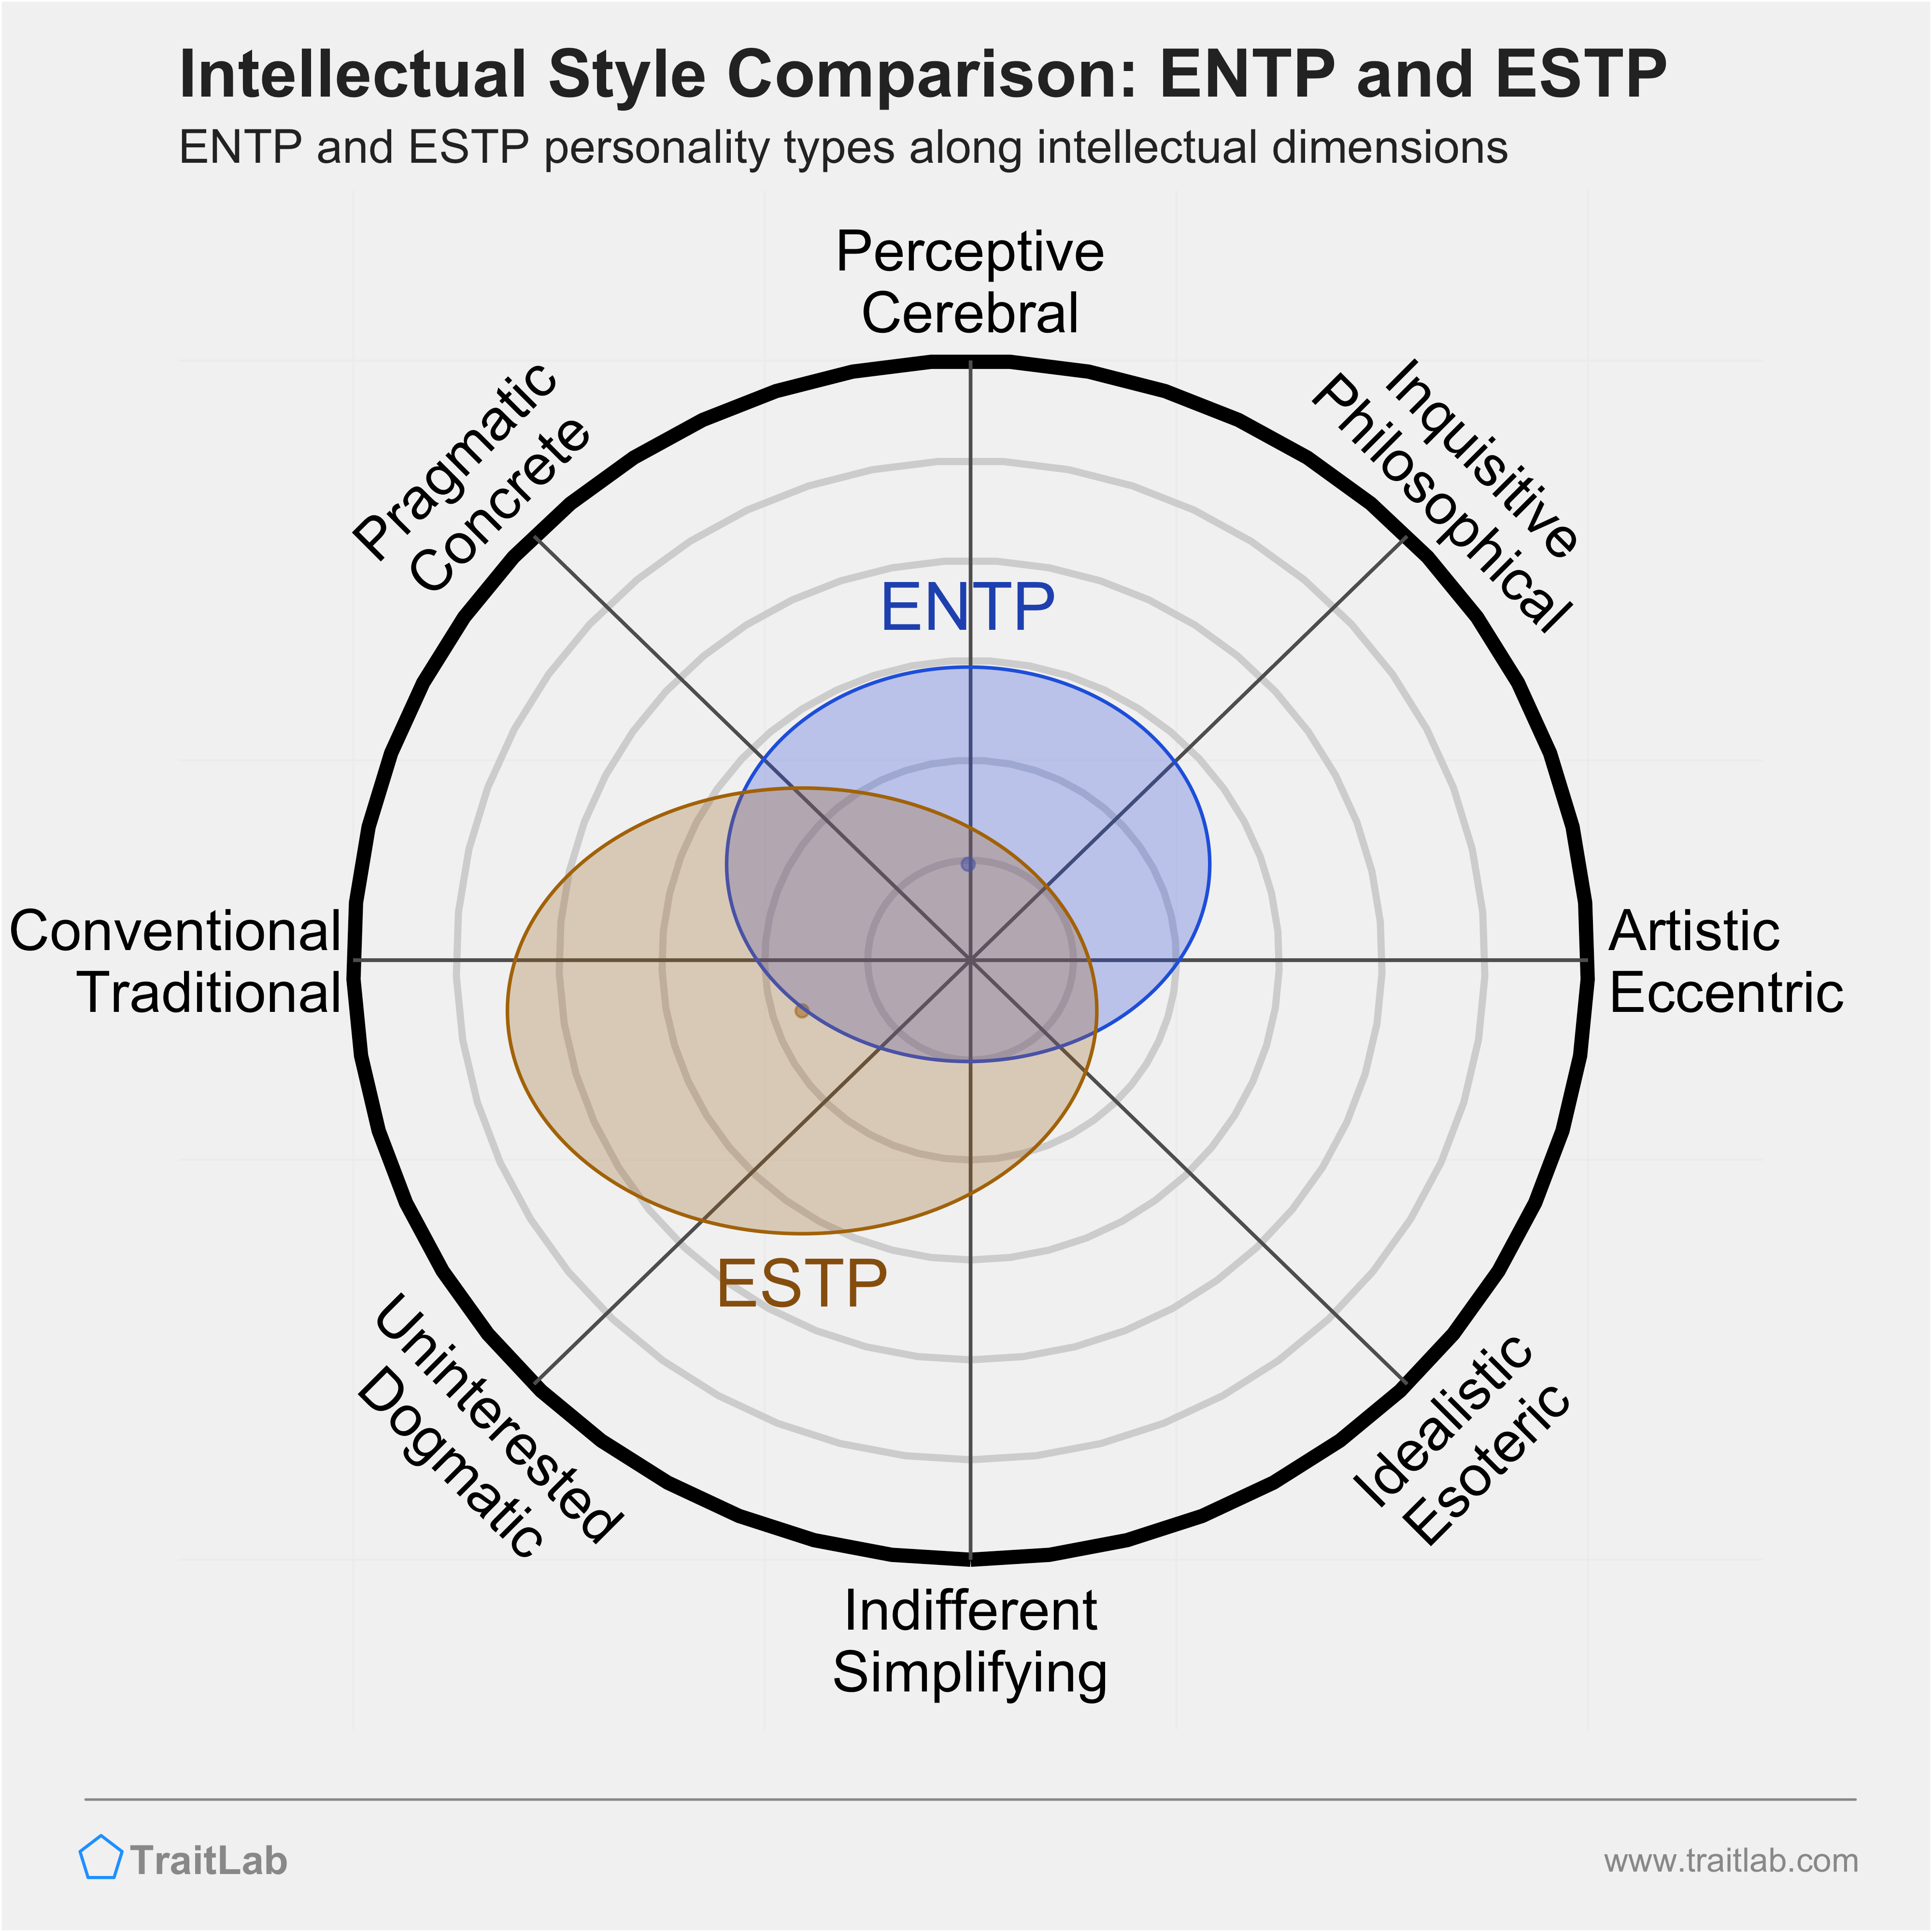 ENTP and ESTP comparison across intellectual dimensions